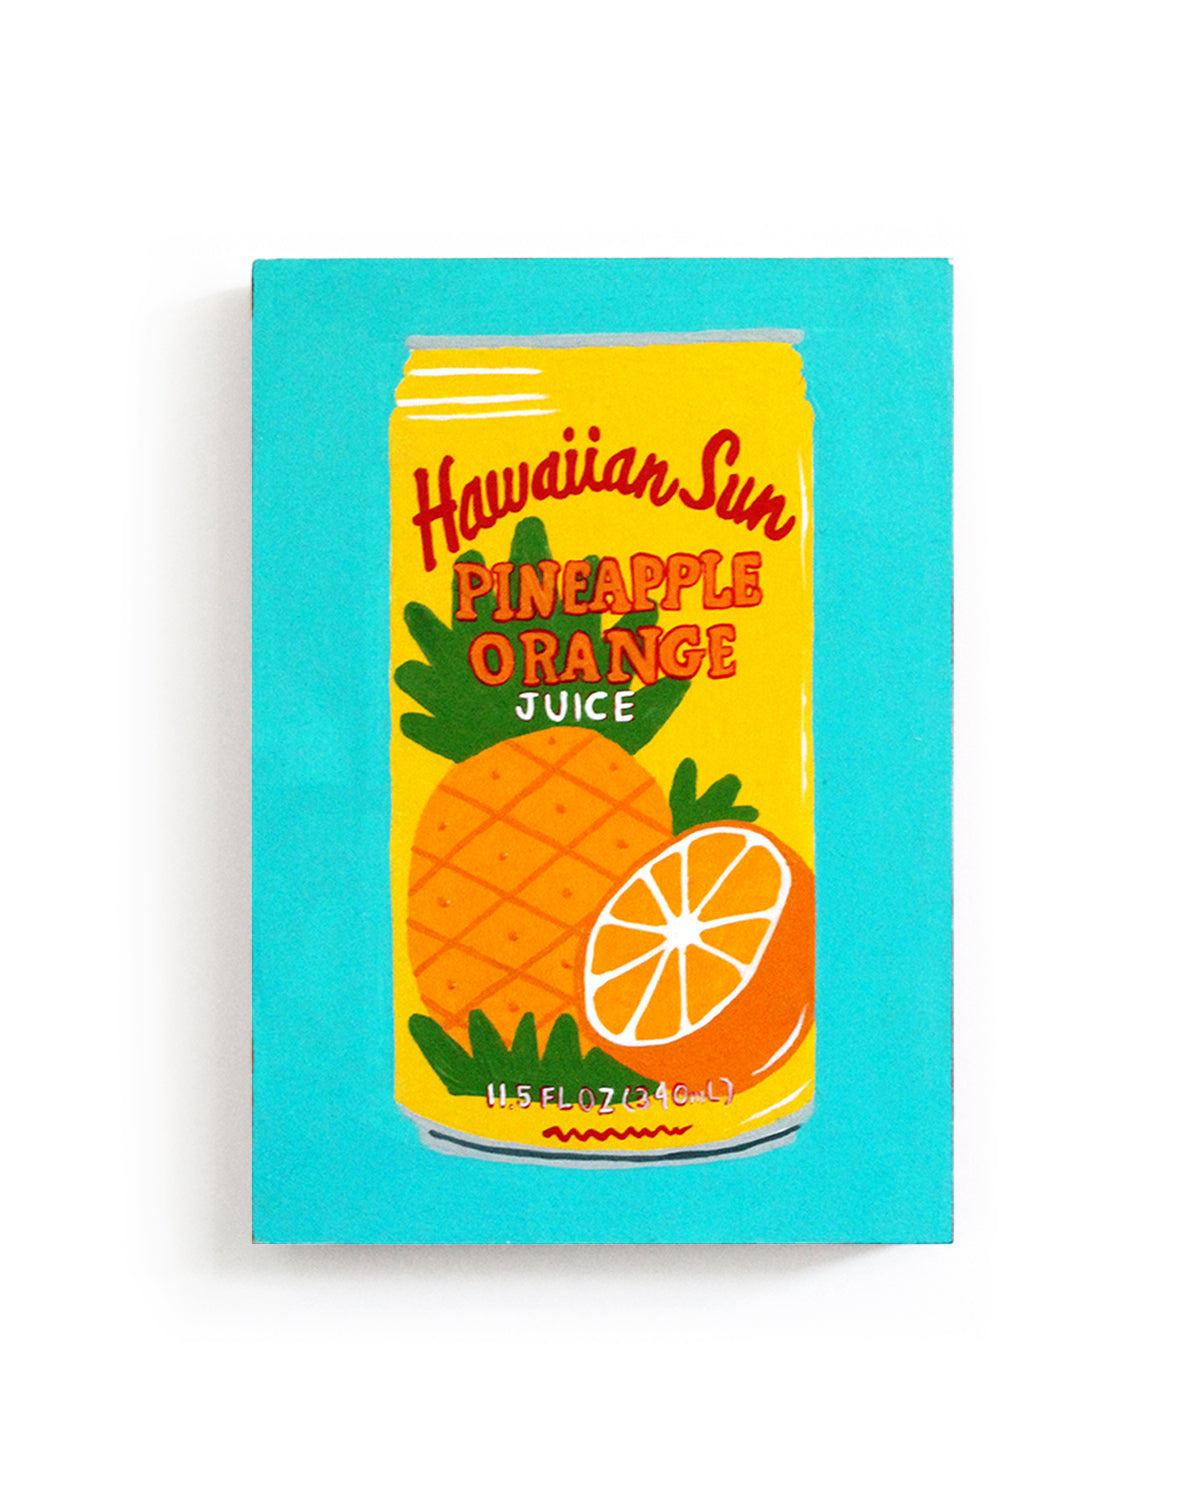 Jackie Brown - Pineapple Orange